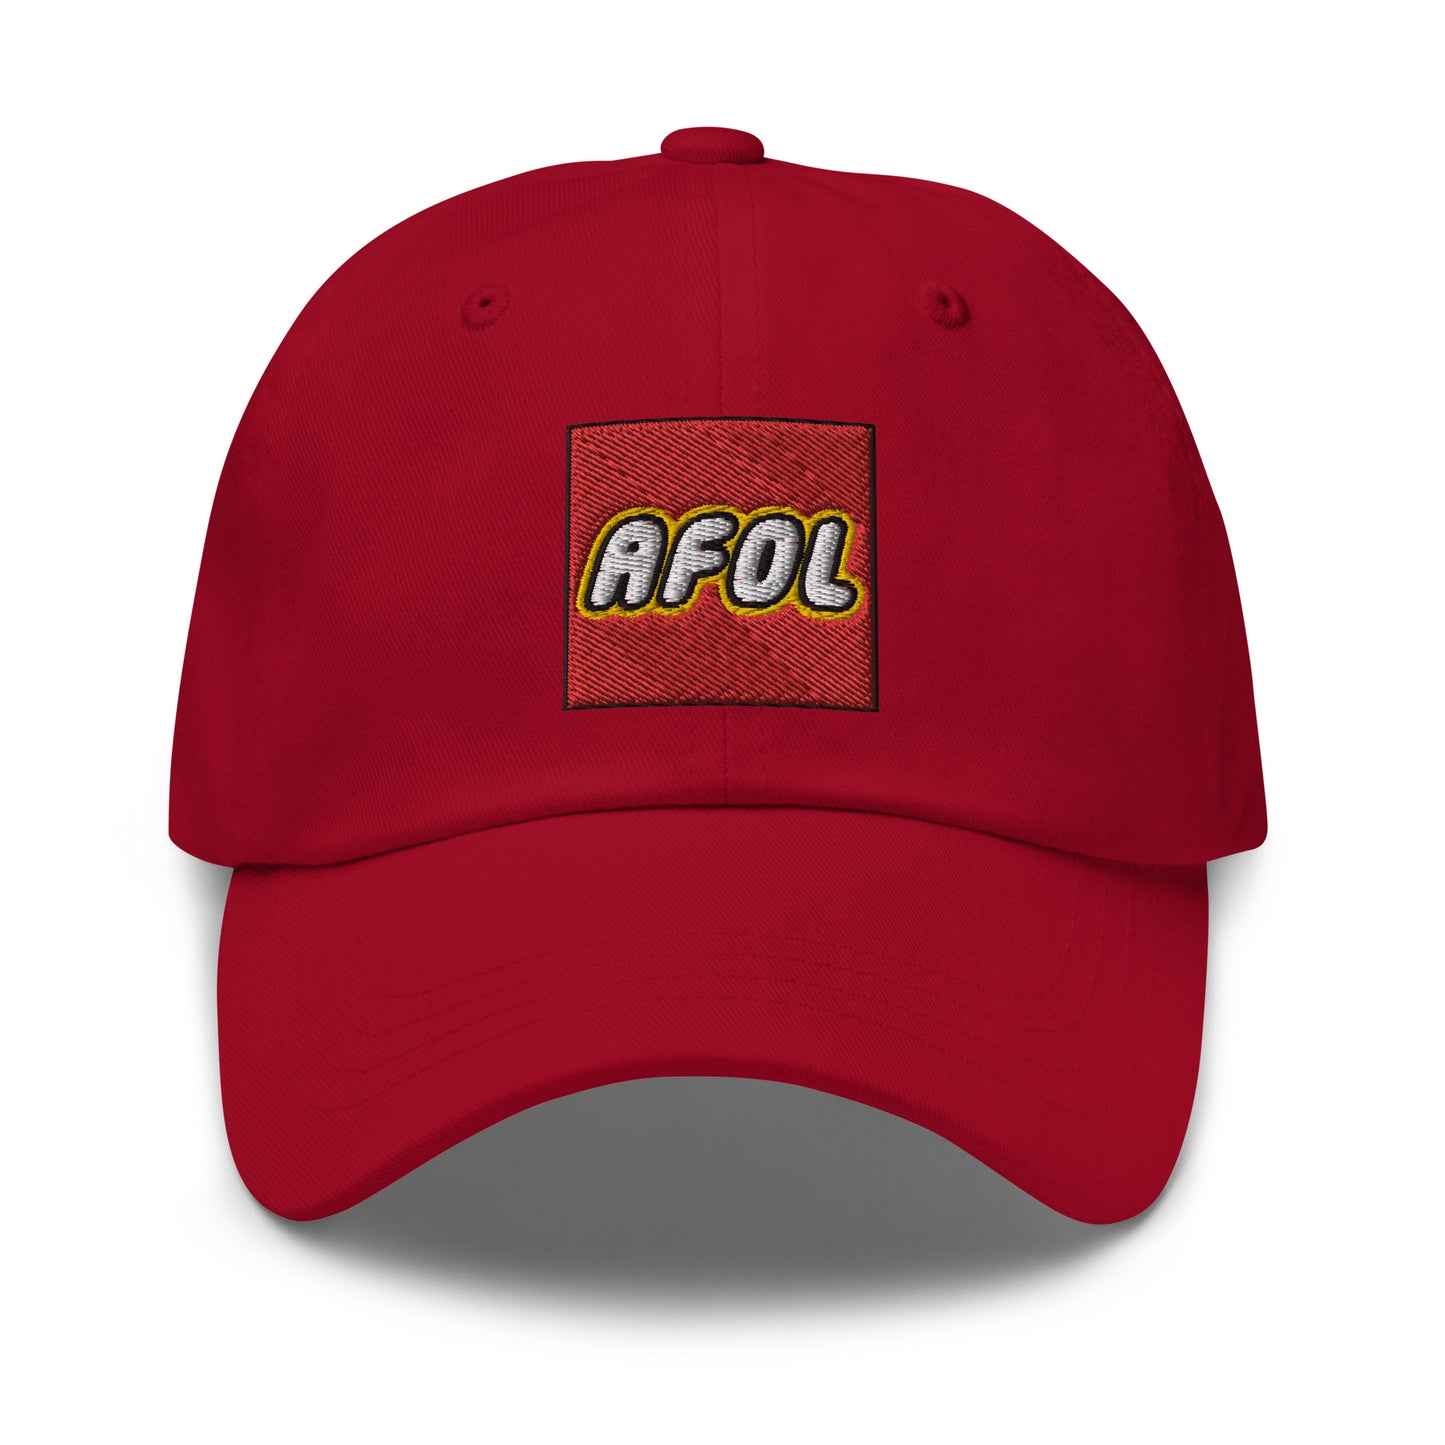 AFOL (Adult Fan of LEGO) Dad Hat